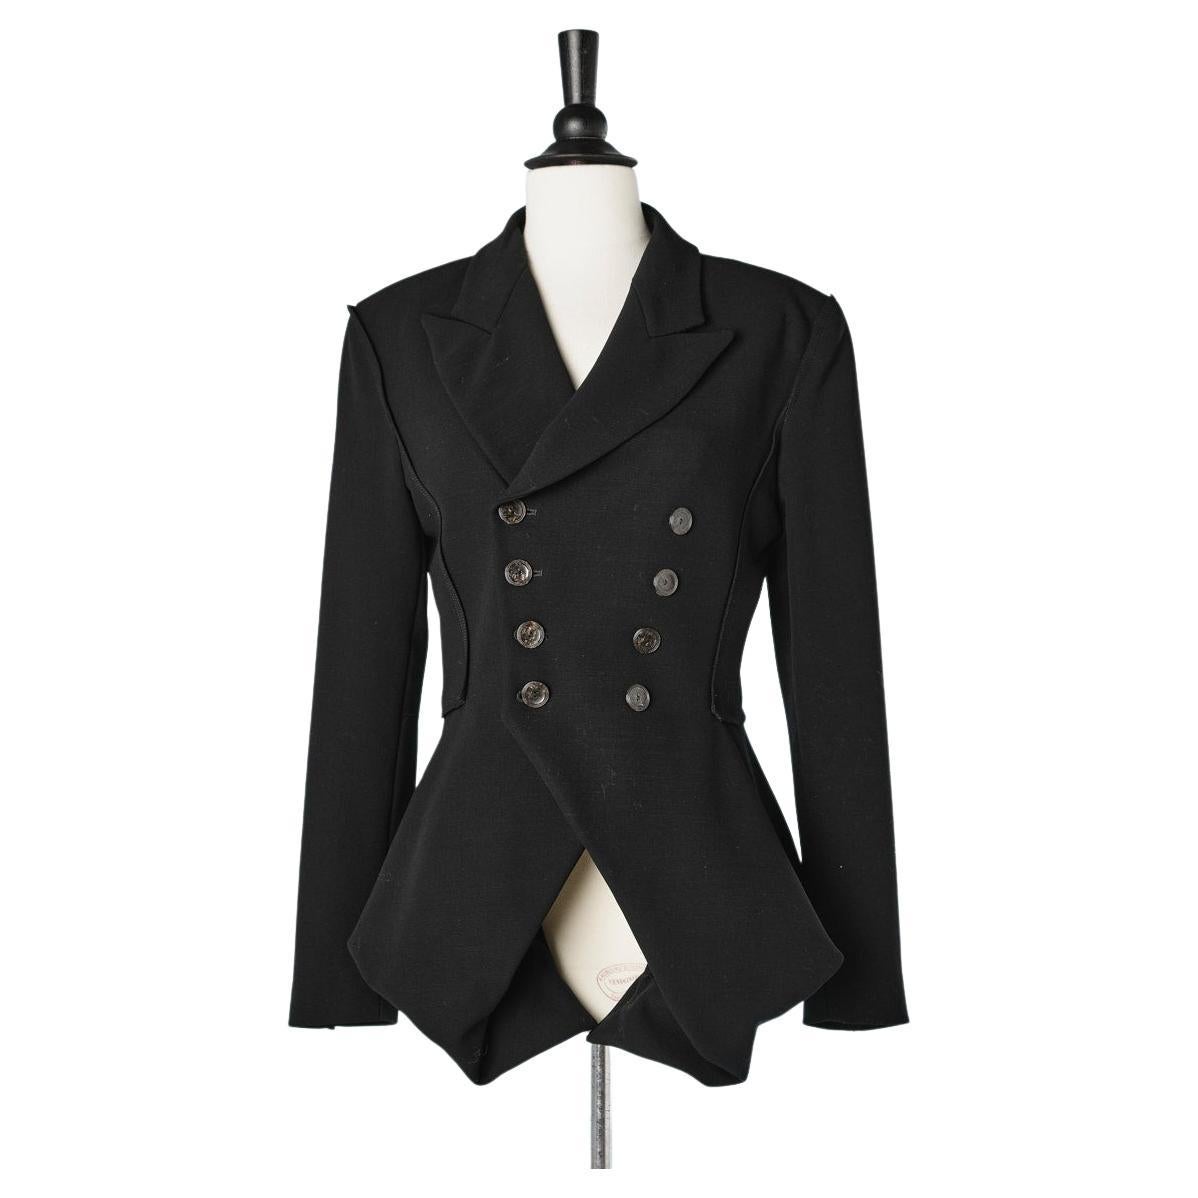 Black wool double - breasted jacket Jean-Paul Gaultier Femme 